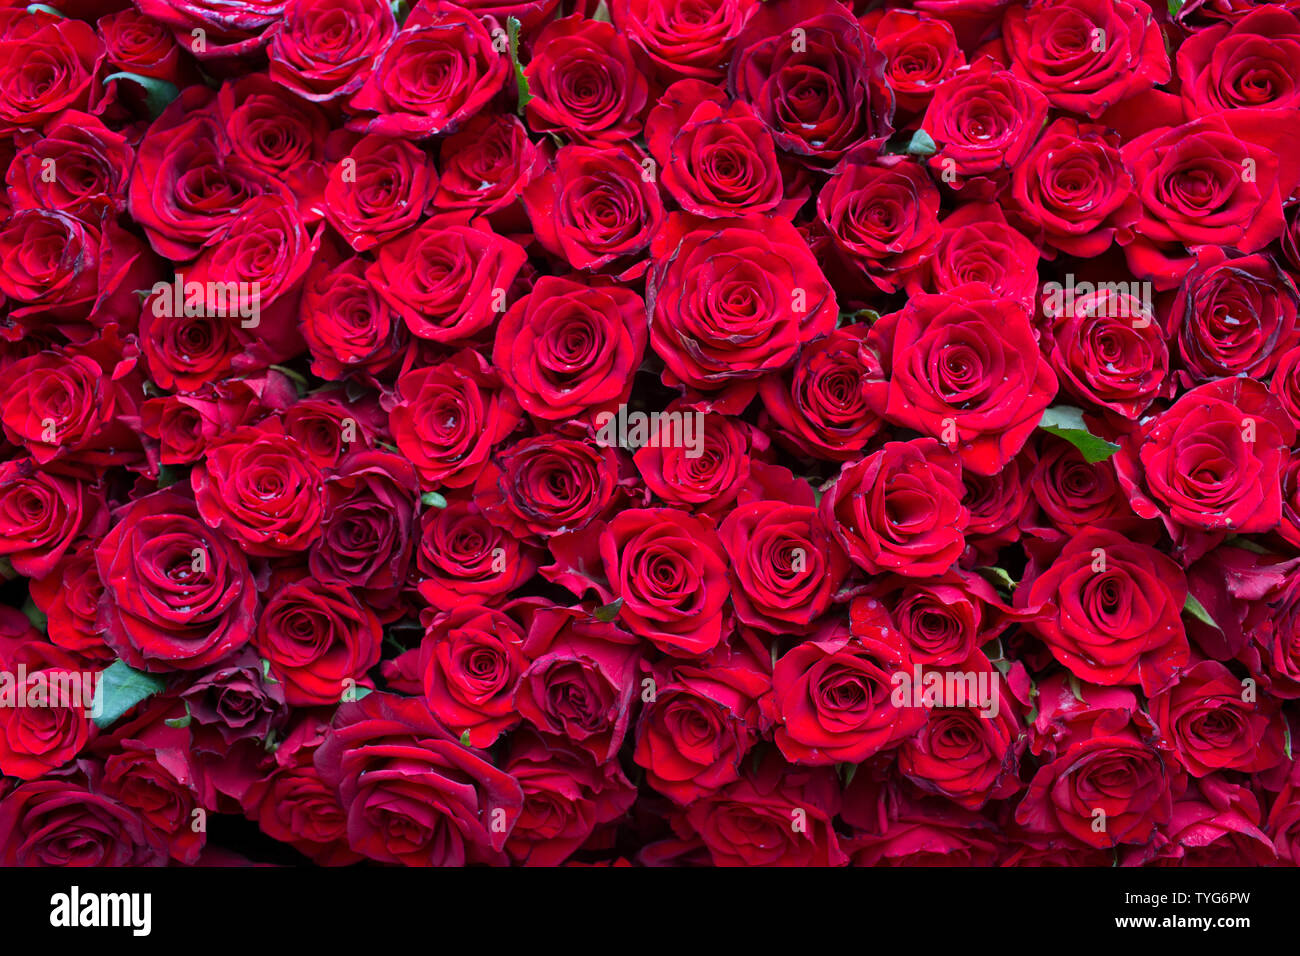 Wand rote Rosen, tausend Blumen, Hintergrund, Textur von Rosen Stockfoto